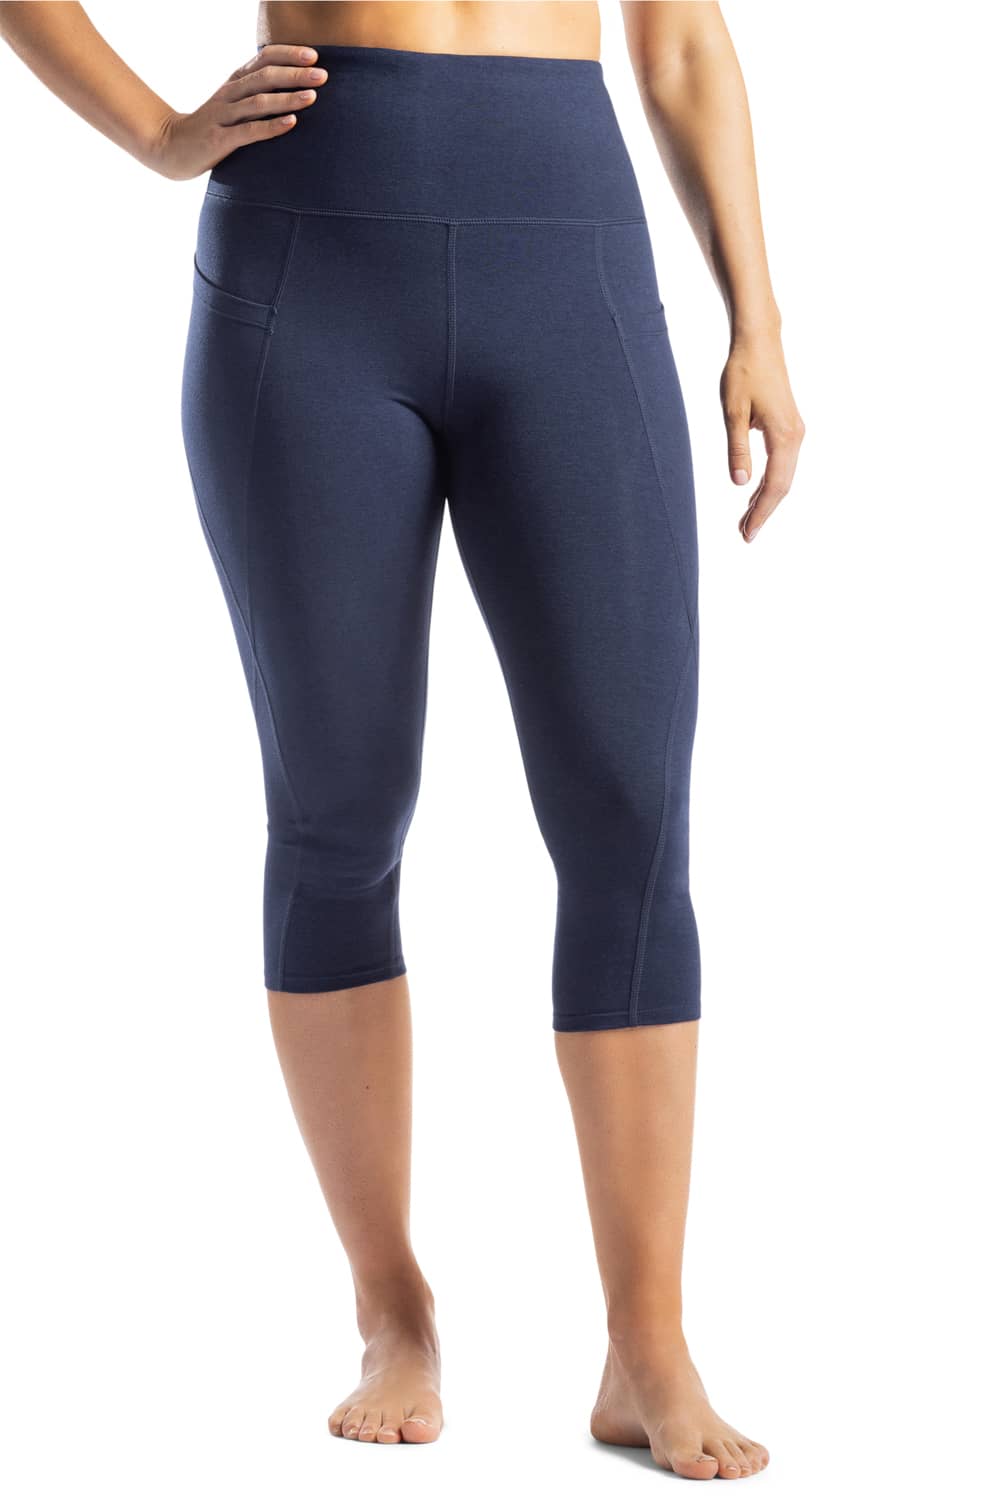 Gubotare Yoga Pants For Women High Waisted Leggings for Women - Capri &  Full Length Women's Leggings,Dark Blue S 